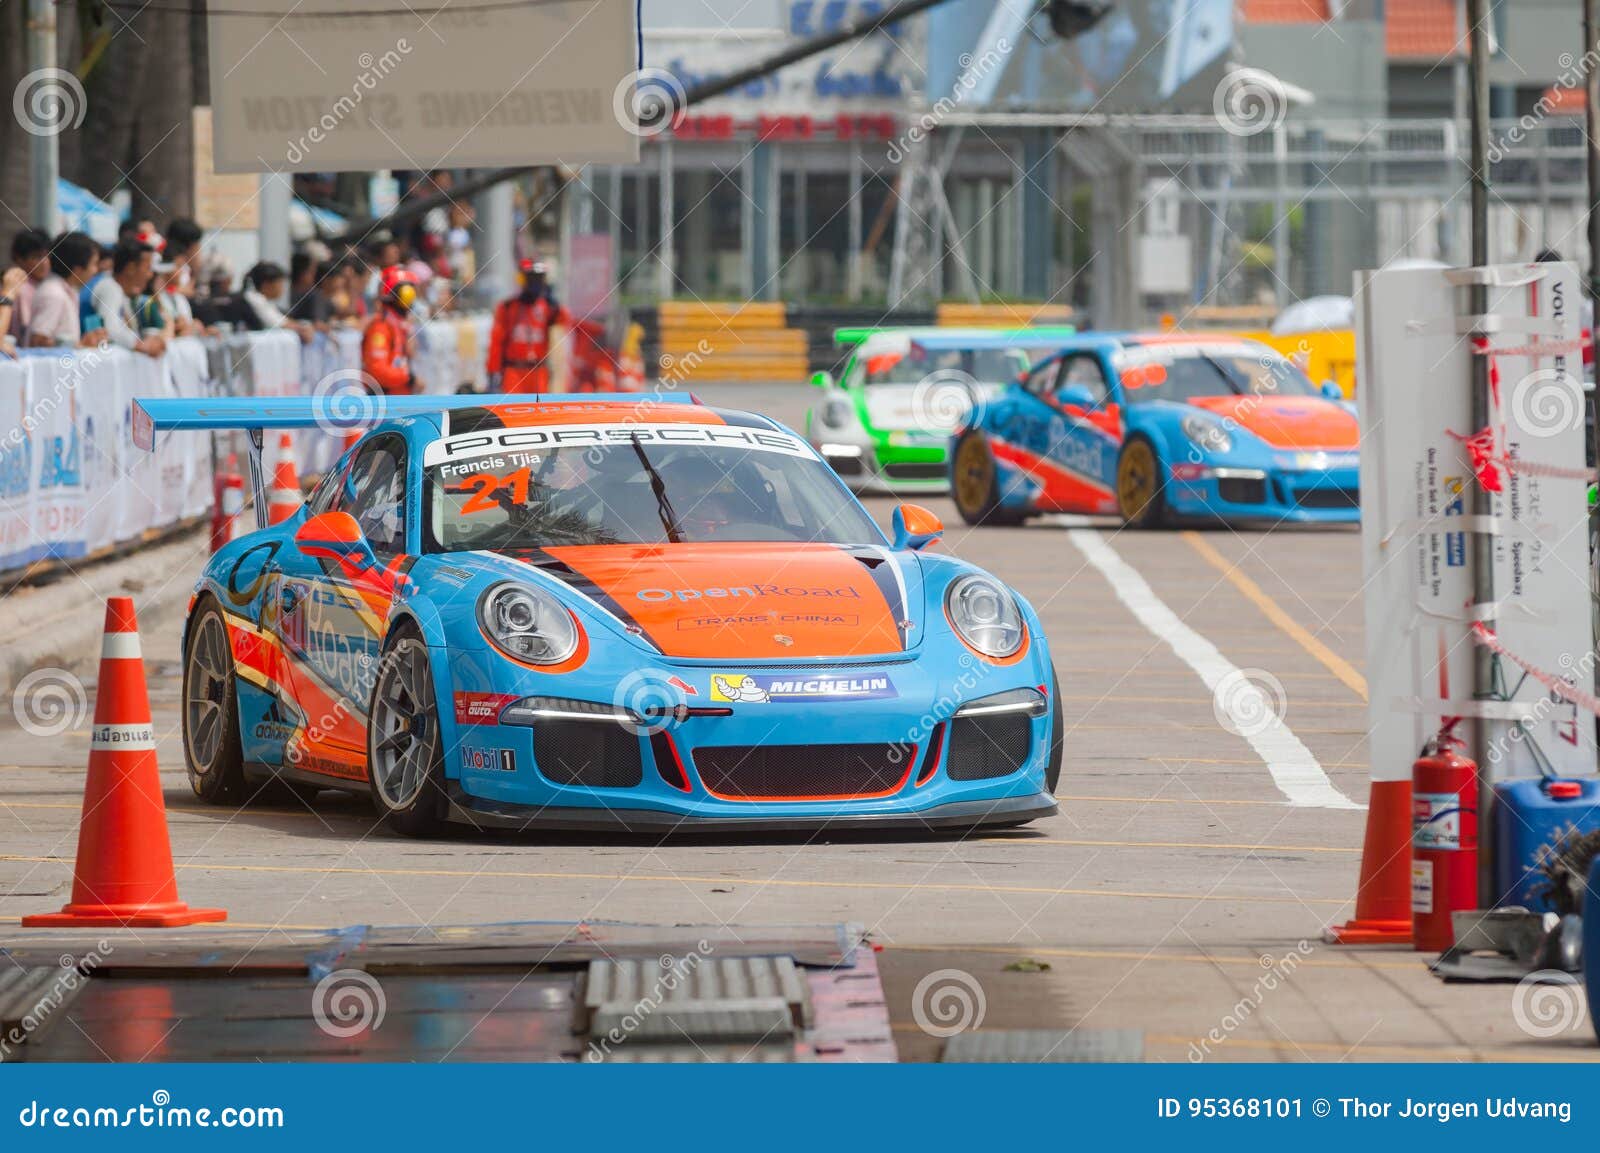 Porsche Carrera Cup Asia, Bang Saen 2017 Editorial Photo - Image of bang,  asia: 95368101